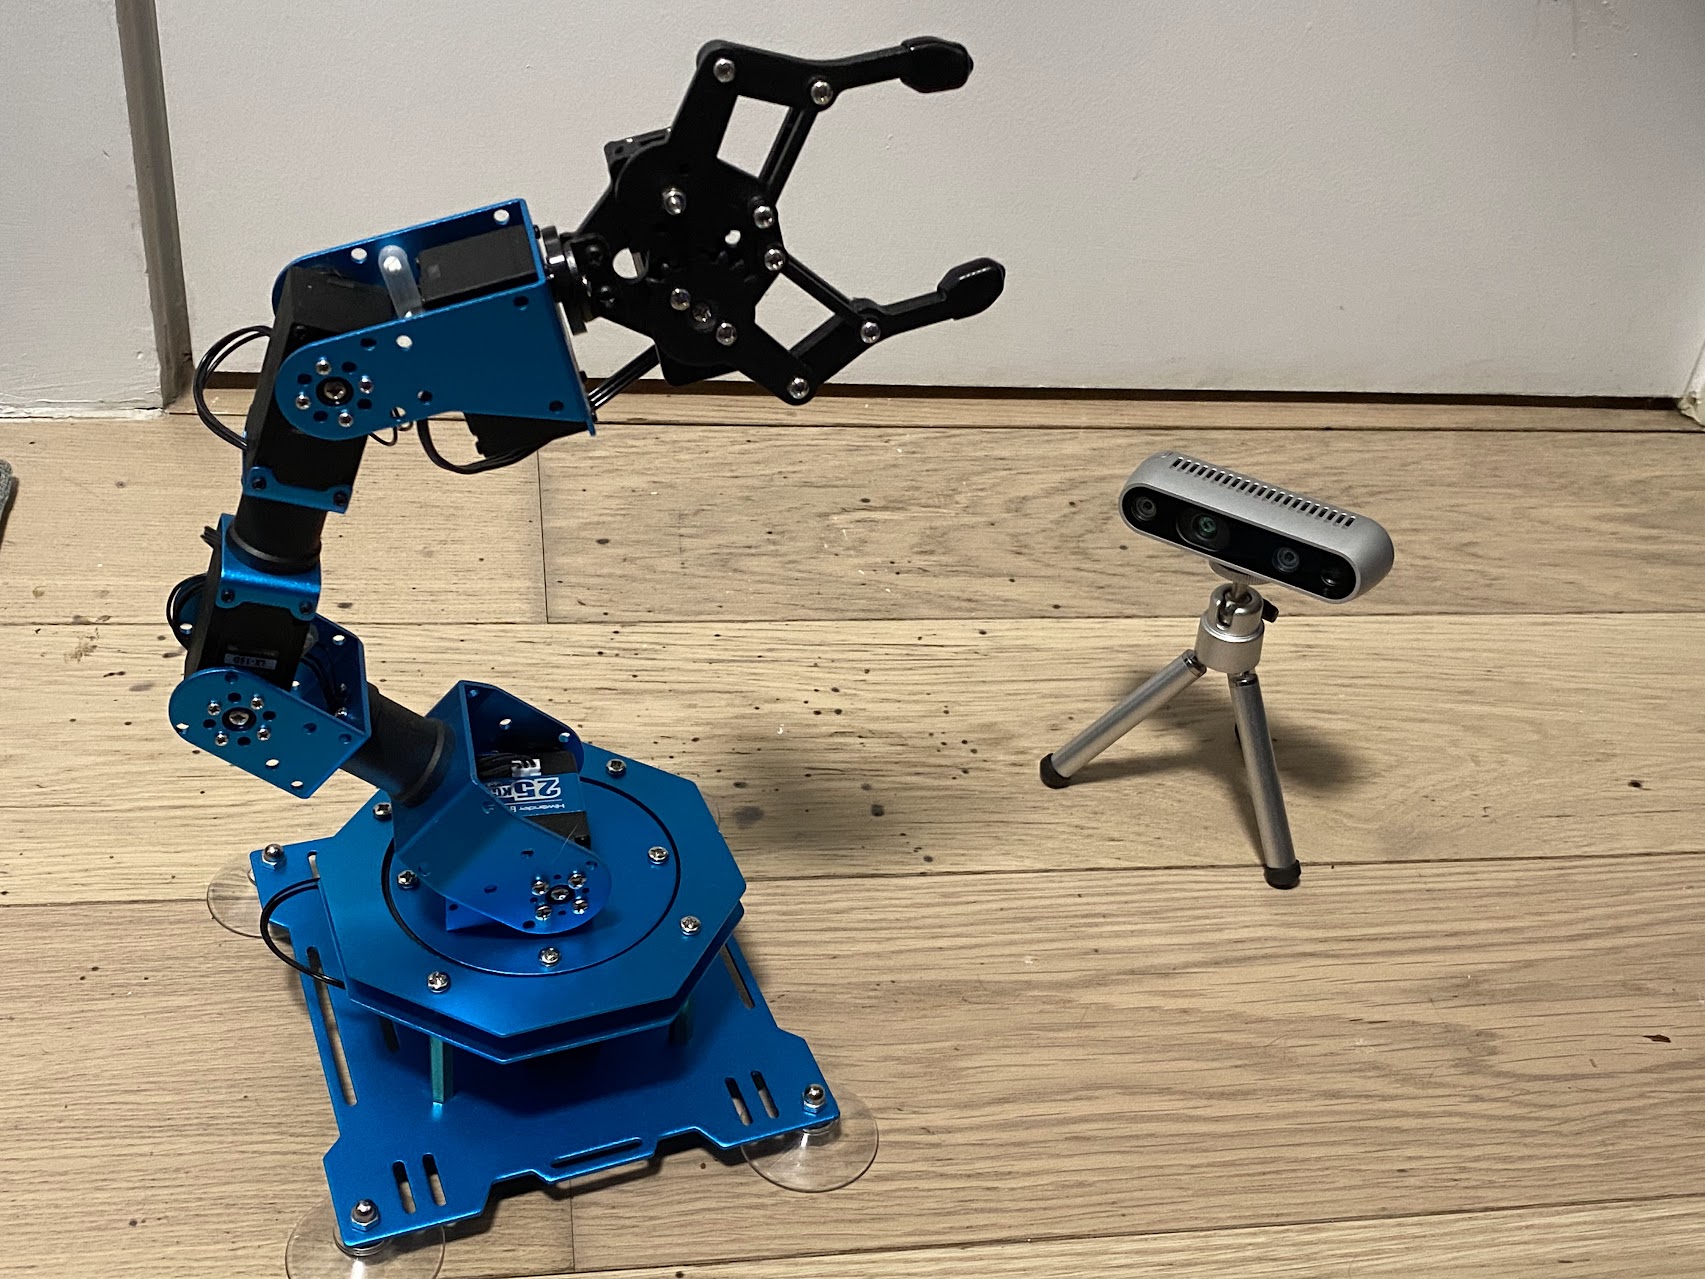 The robot arm I assembled for telerobotics tasks, alongside a depth camera intended for visual self modeling